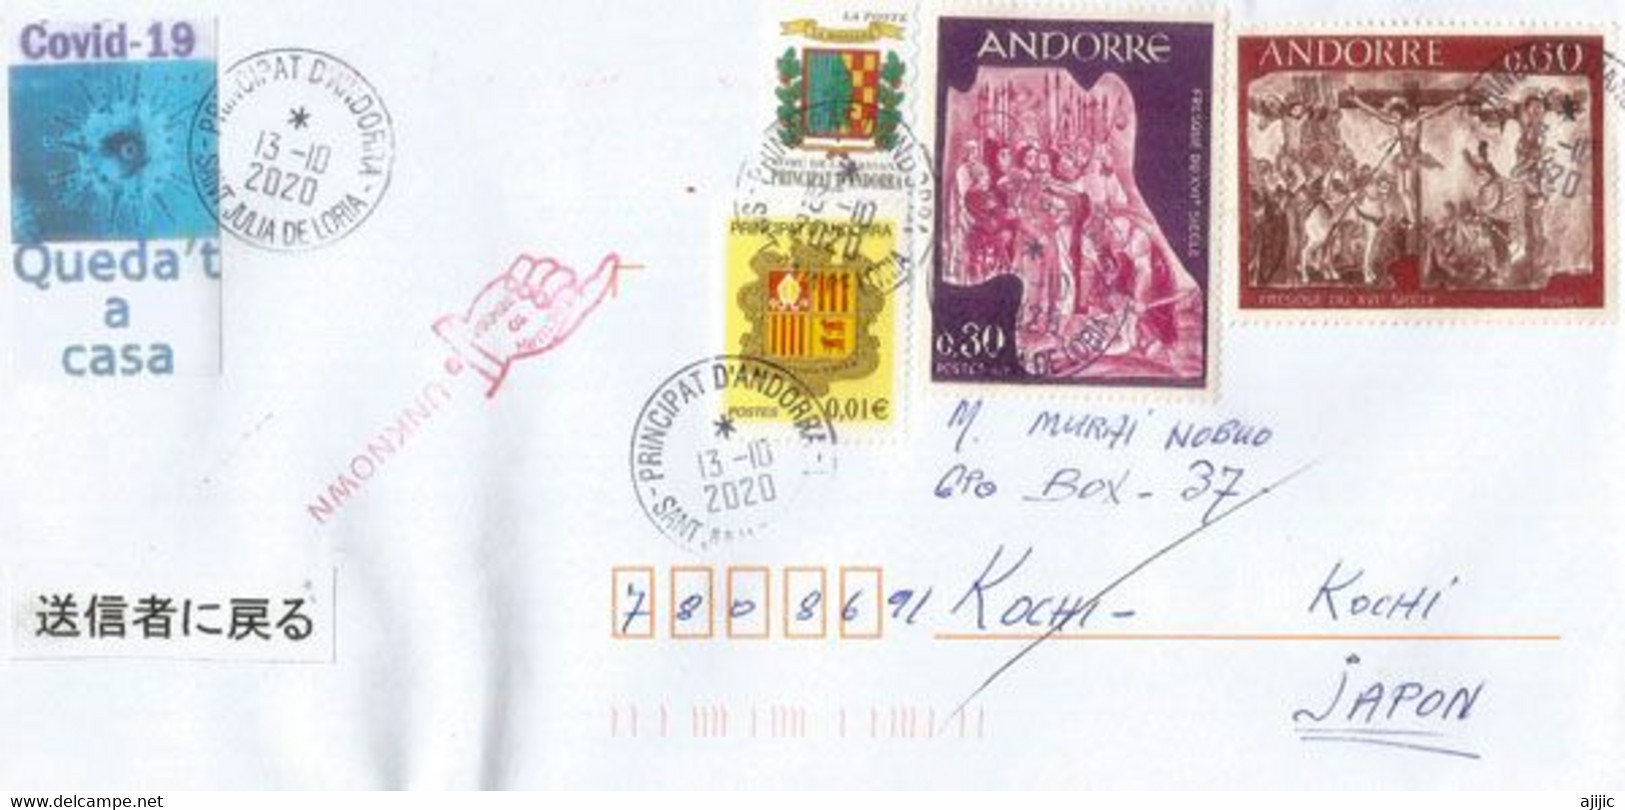 Lettre Andorre Envoyée Au Japon Pendant Confinement Covid-19,et Retour à L'expediteur,avec Vignette Prévention. 2 Photos - Lettres & Documents